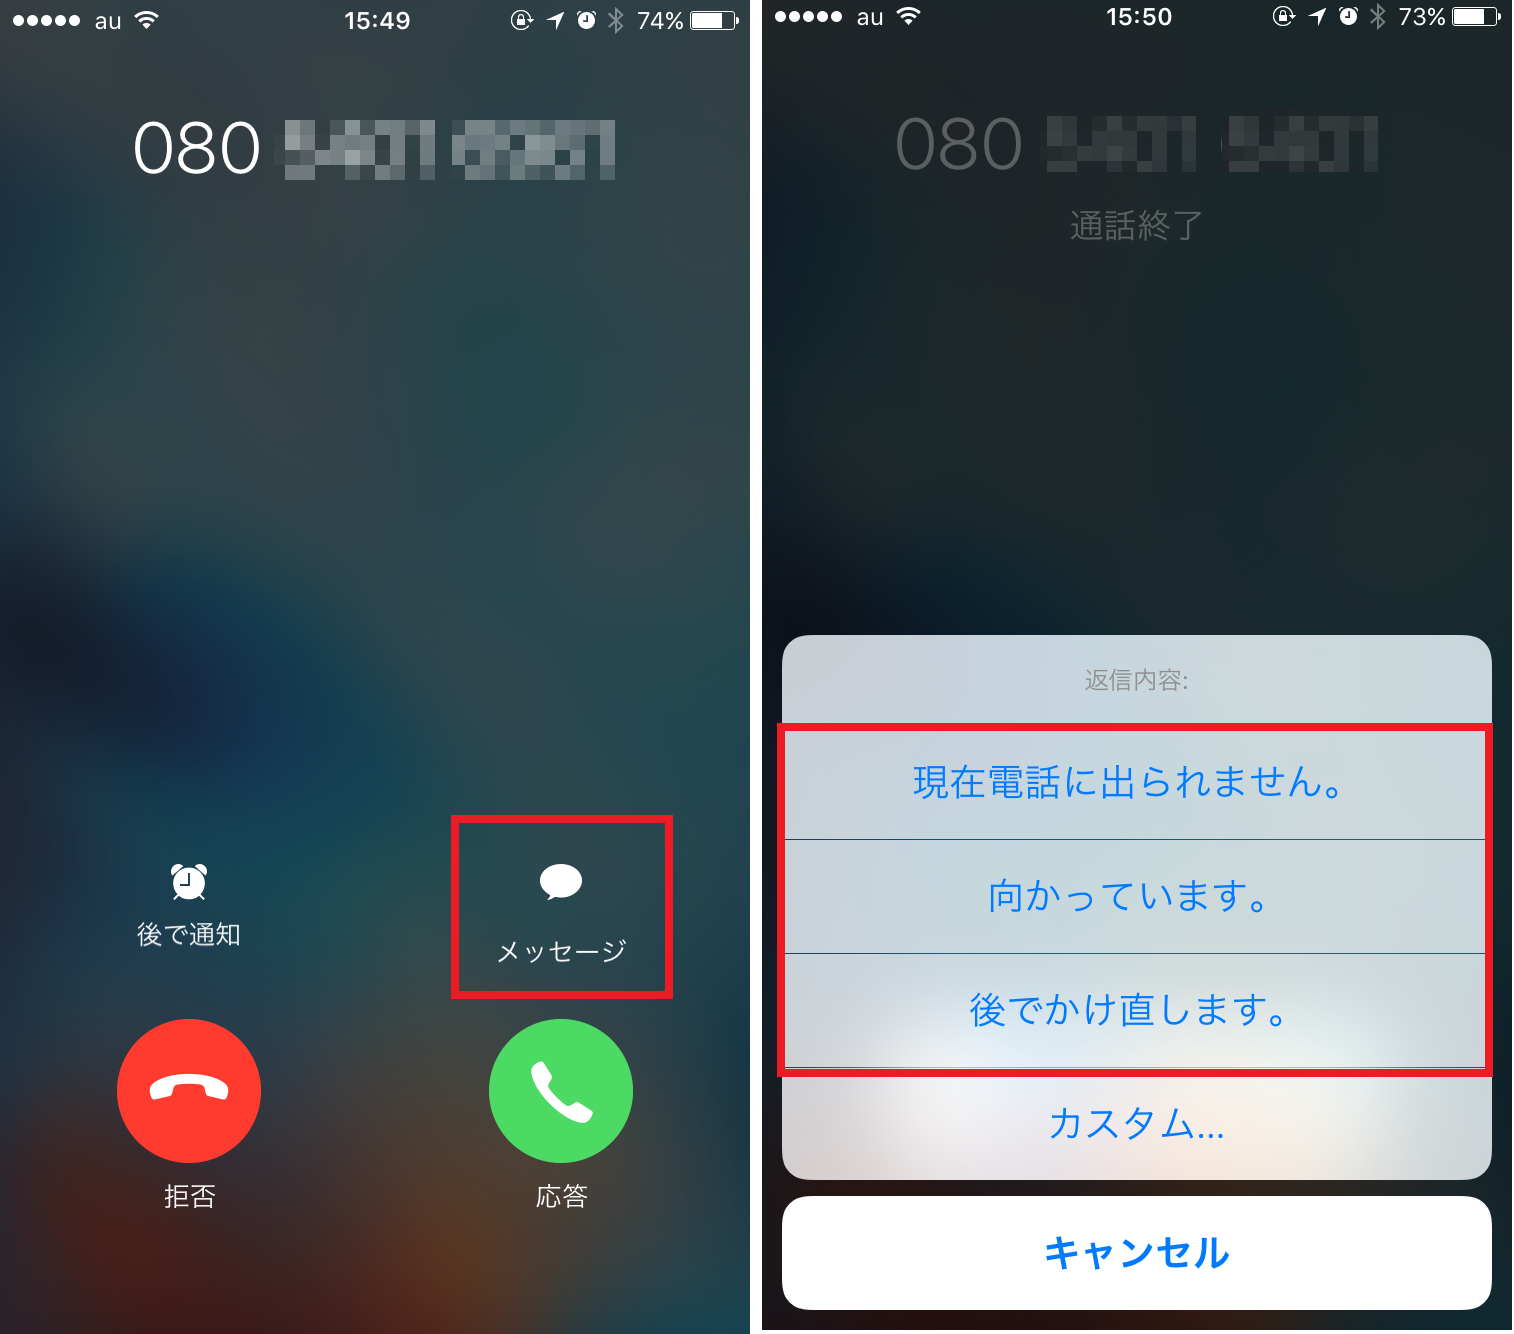 急な着信でもiphoneでスマートに対応する方法 Iphone Tips Engadget 日本版